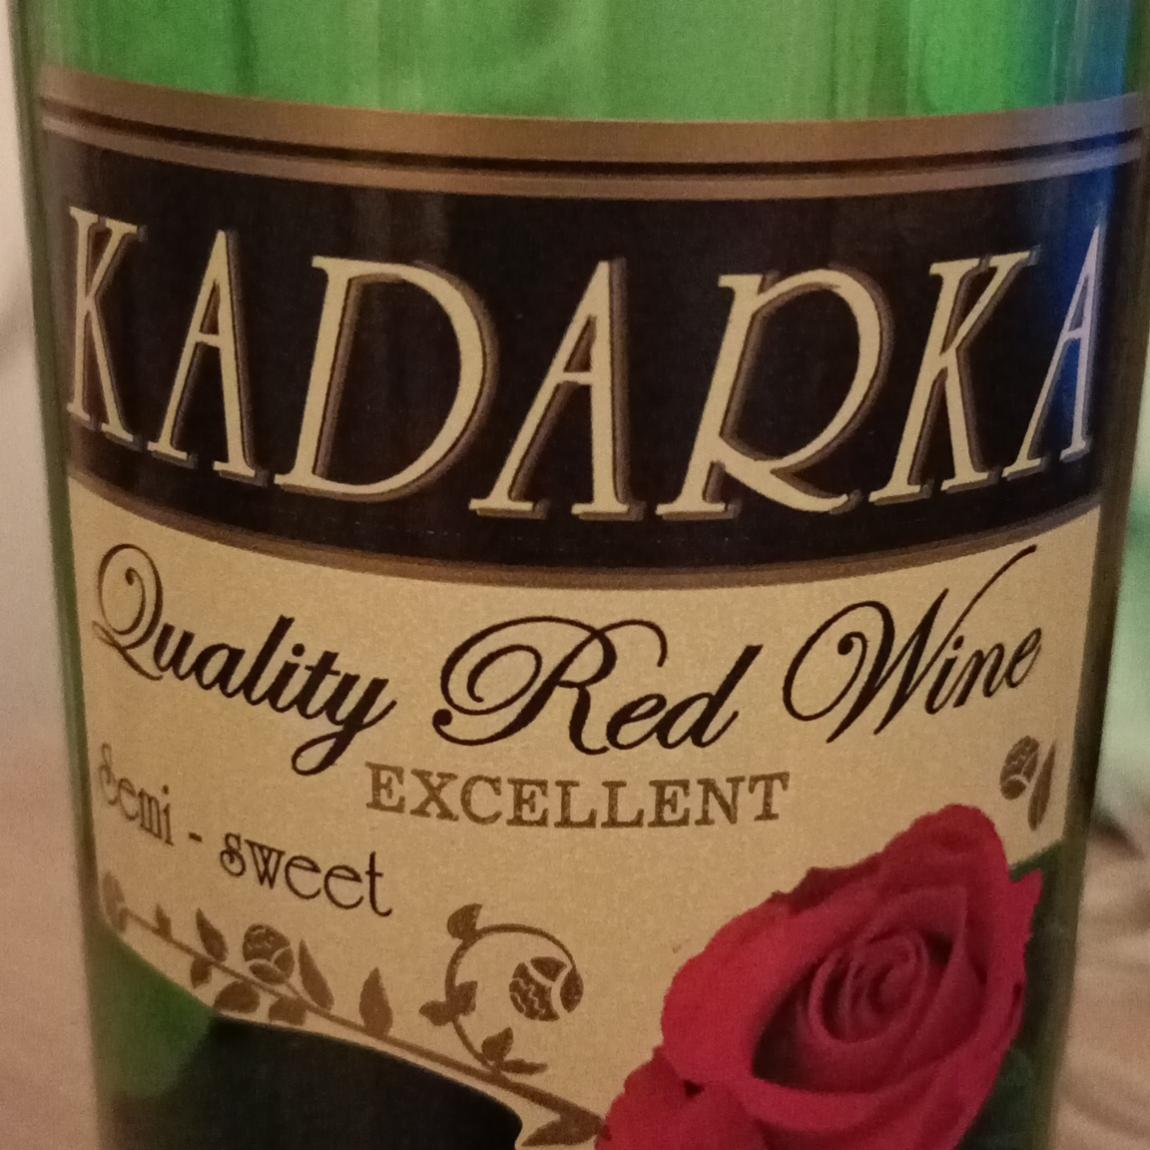 Zdjęcia - Quality Red wine Semi sweet Kadarka